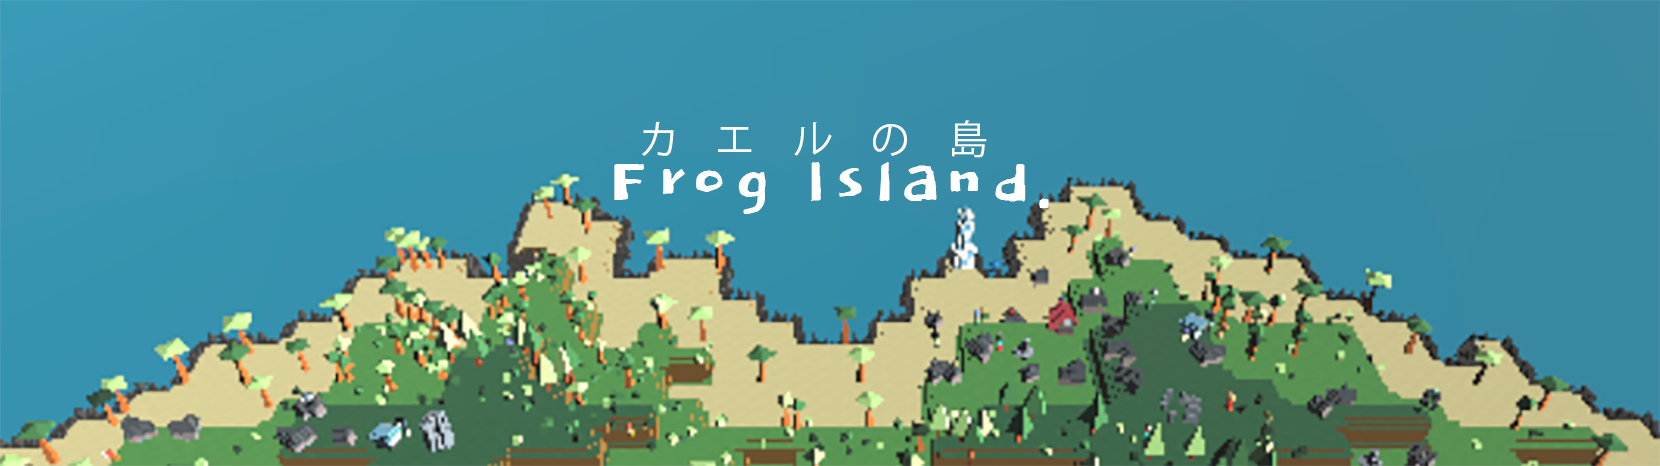 Frog Island!